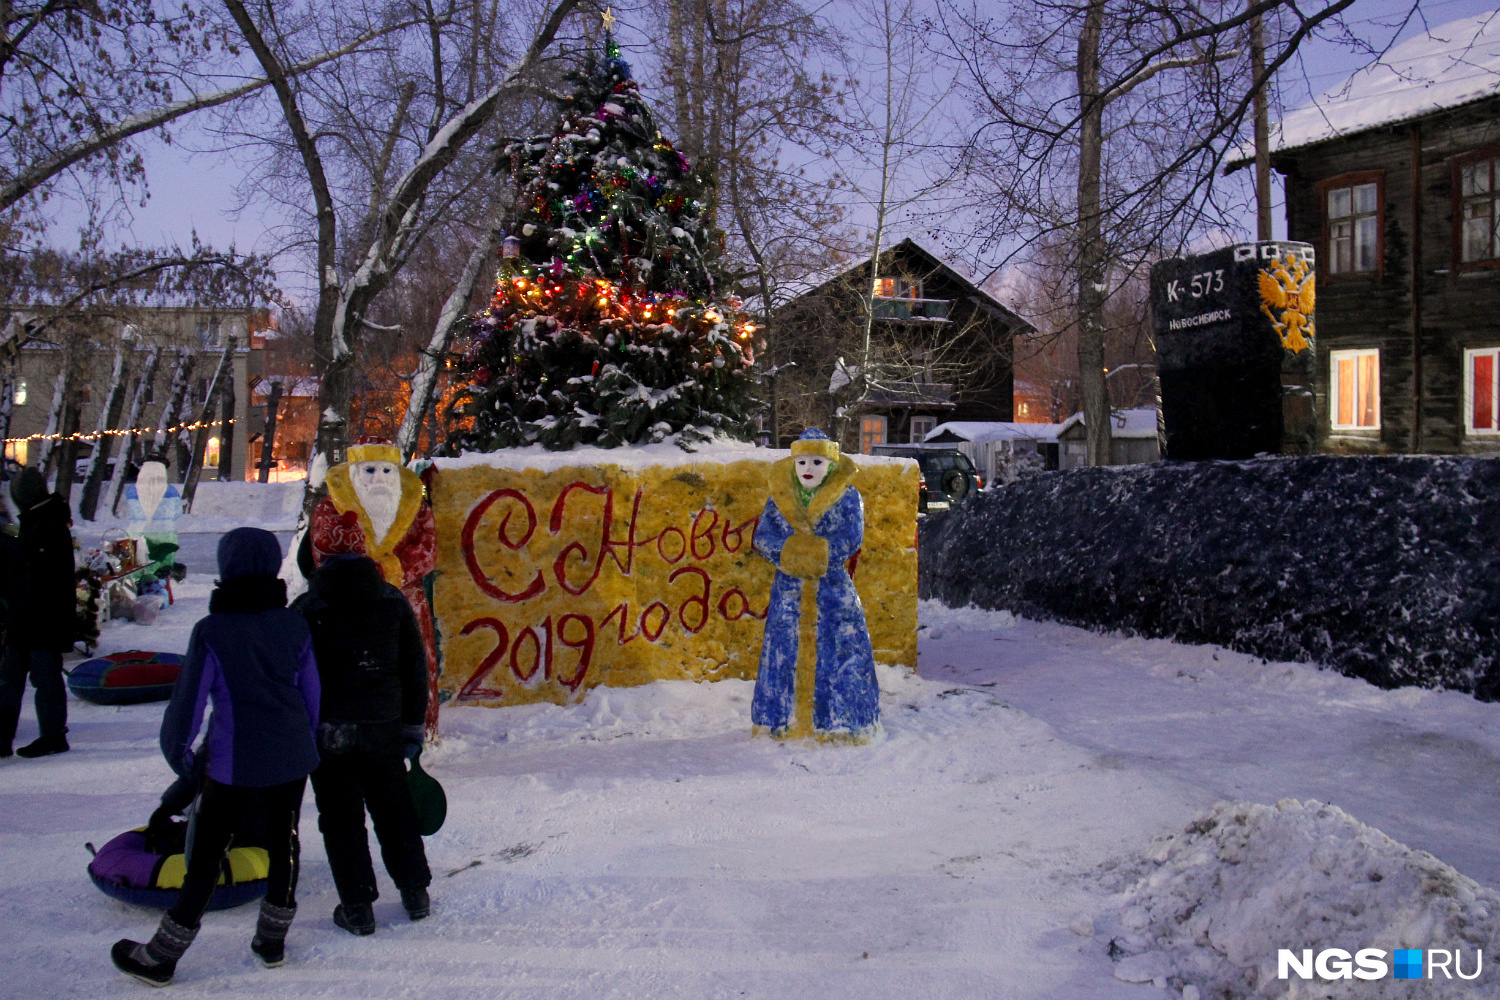 В центре двора над собранием очень разных снежных скульптур возвышается новогодняя ёлка, которая соединяет городок в единое целое